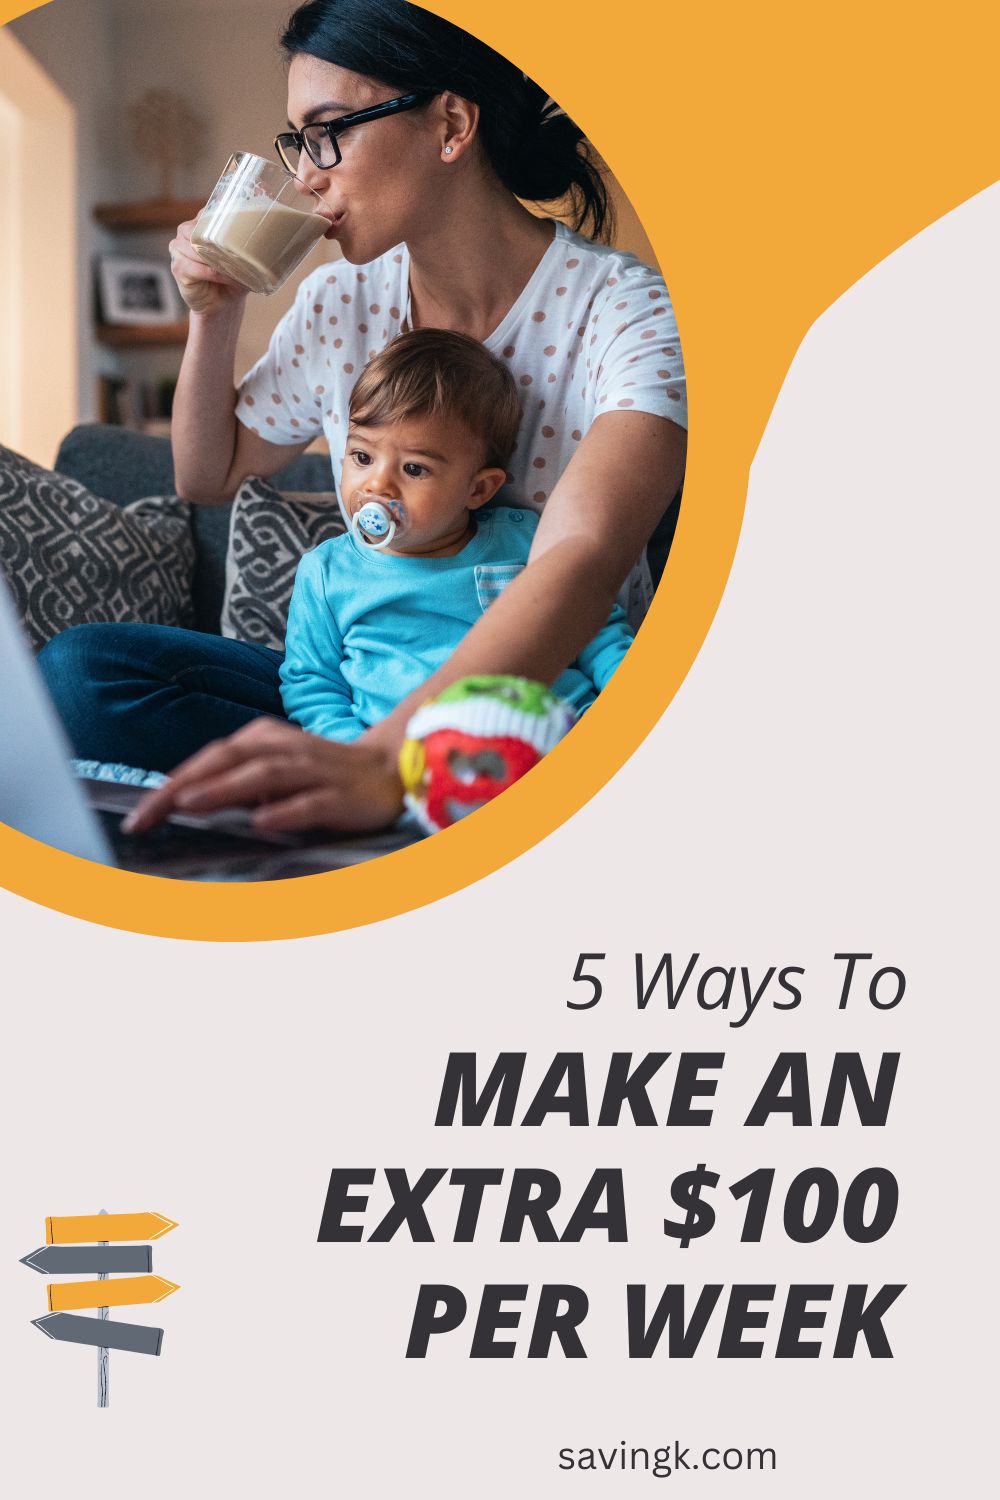 Make An extra $100 per week